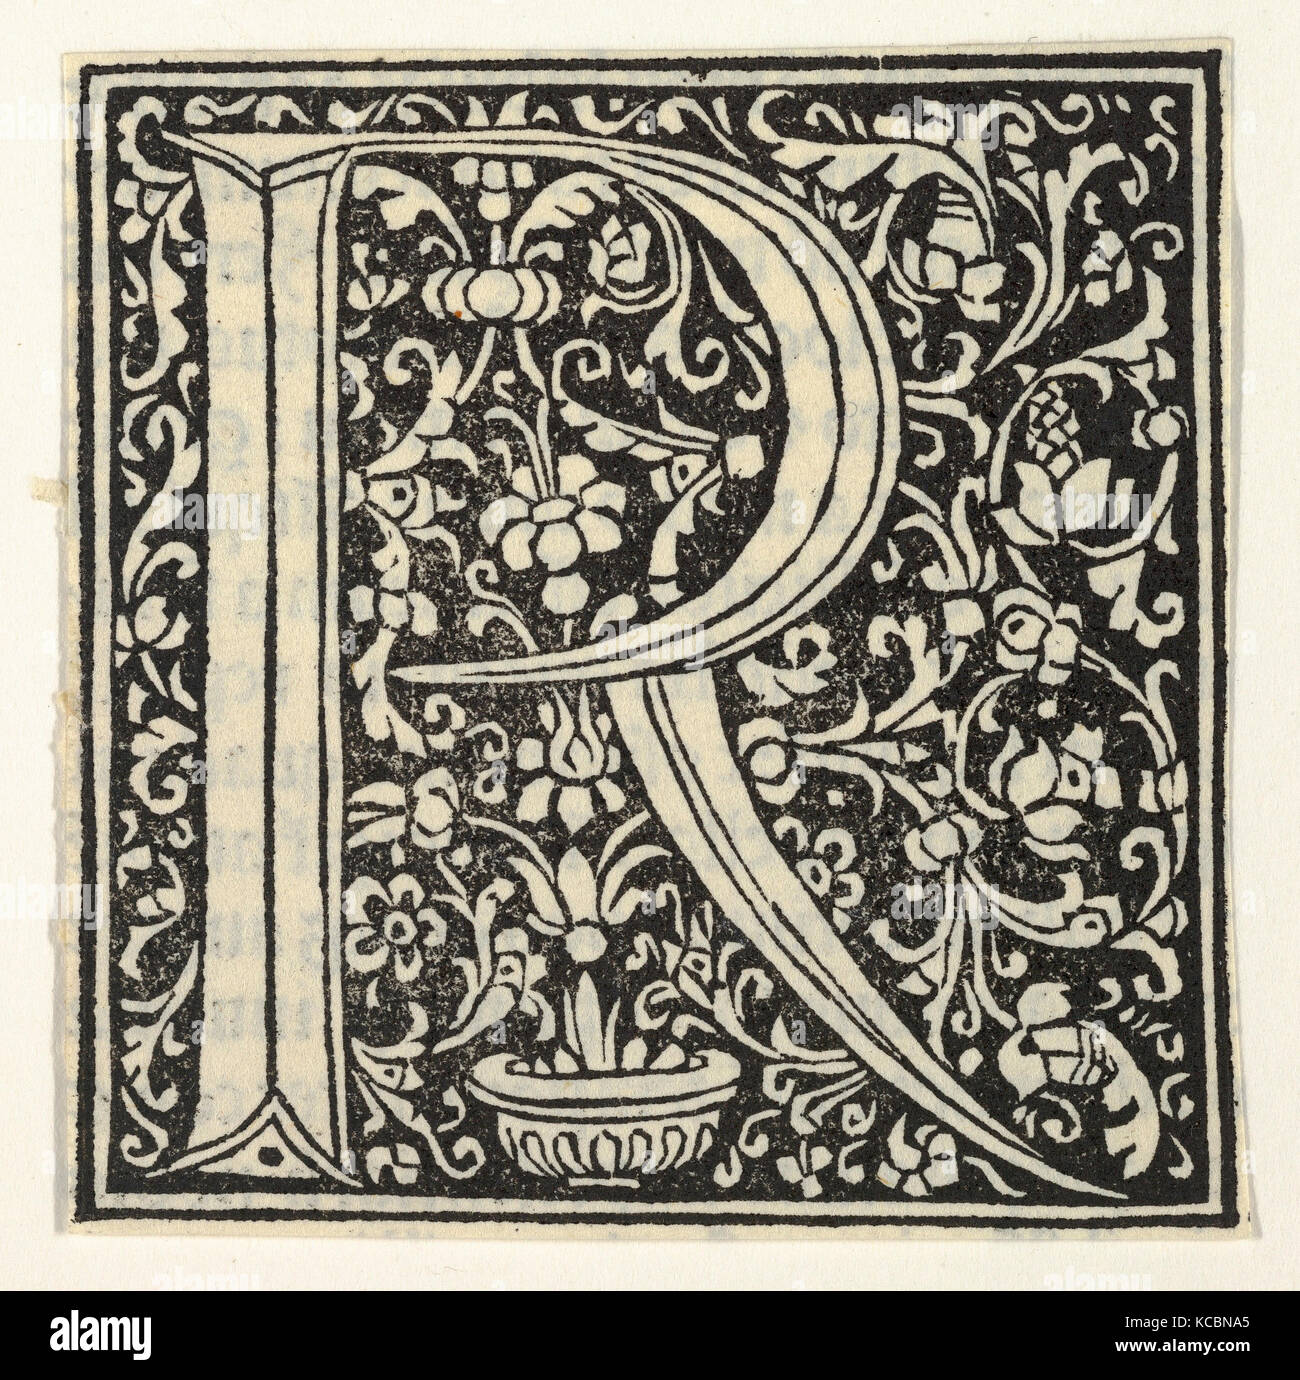 Dessins et estampes, Print, Première lettre R avec motif floral, artiste, anonyme, Italien, 15ème siècle, anonyme, italien Banque D'Images